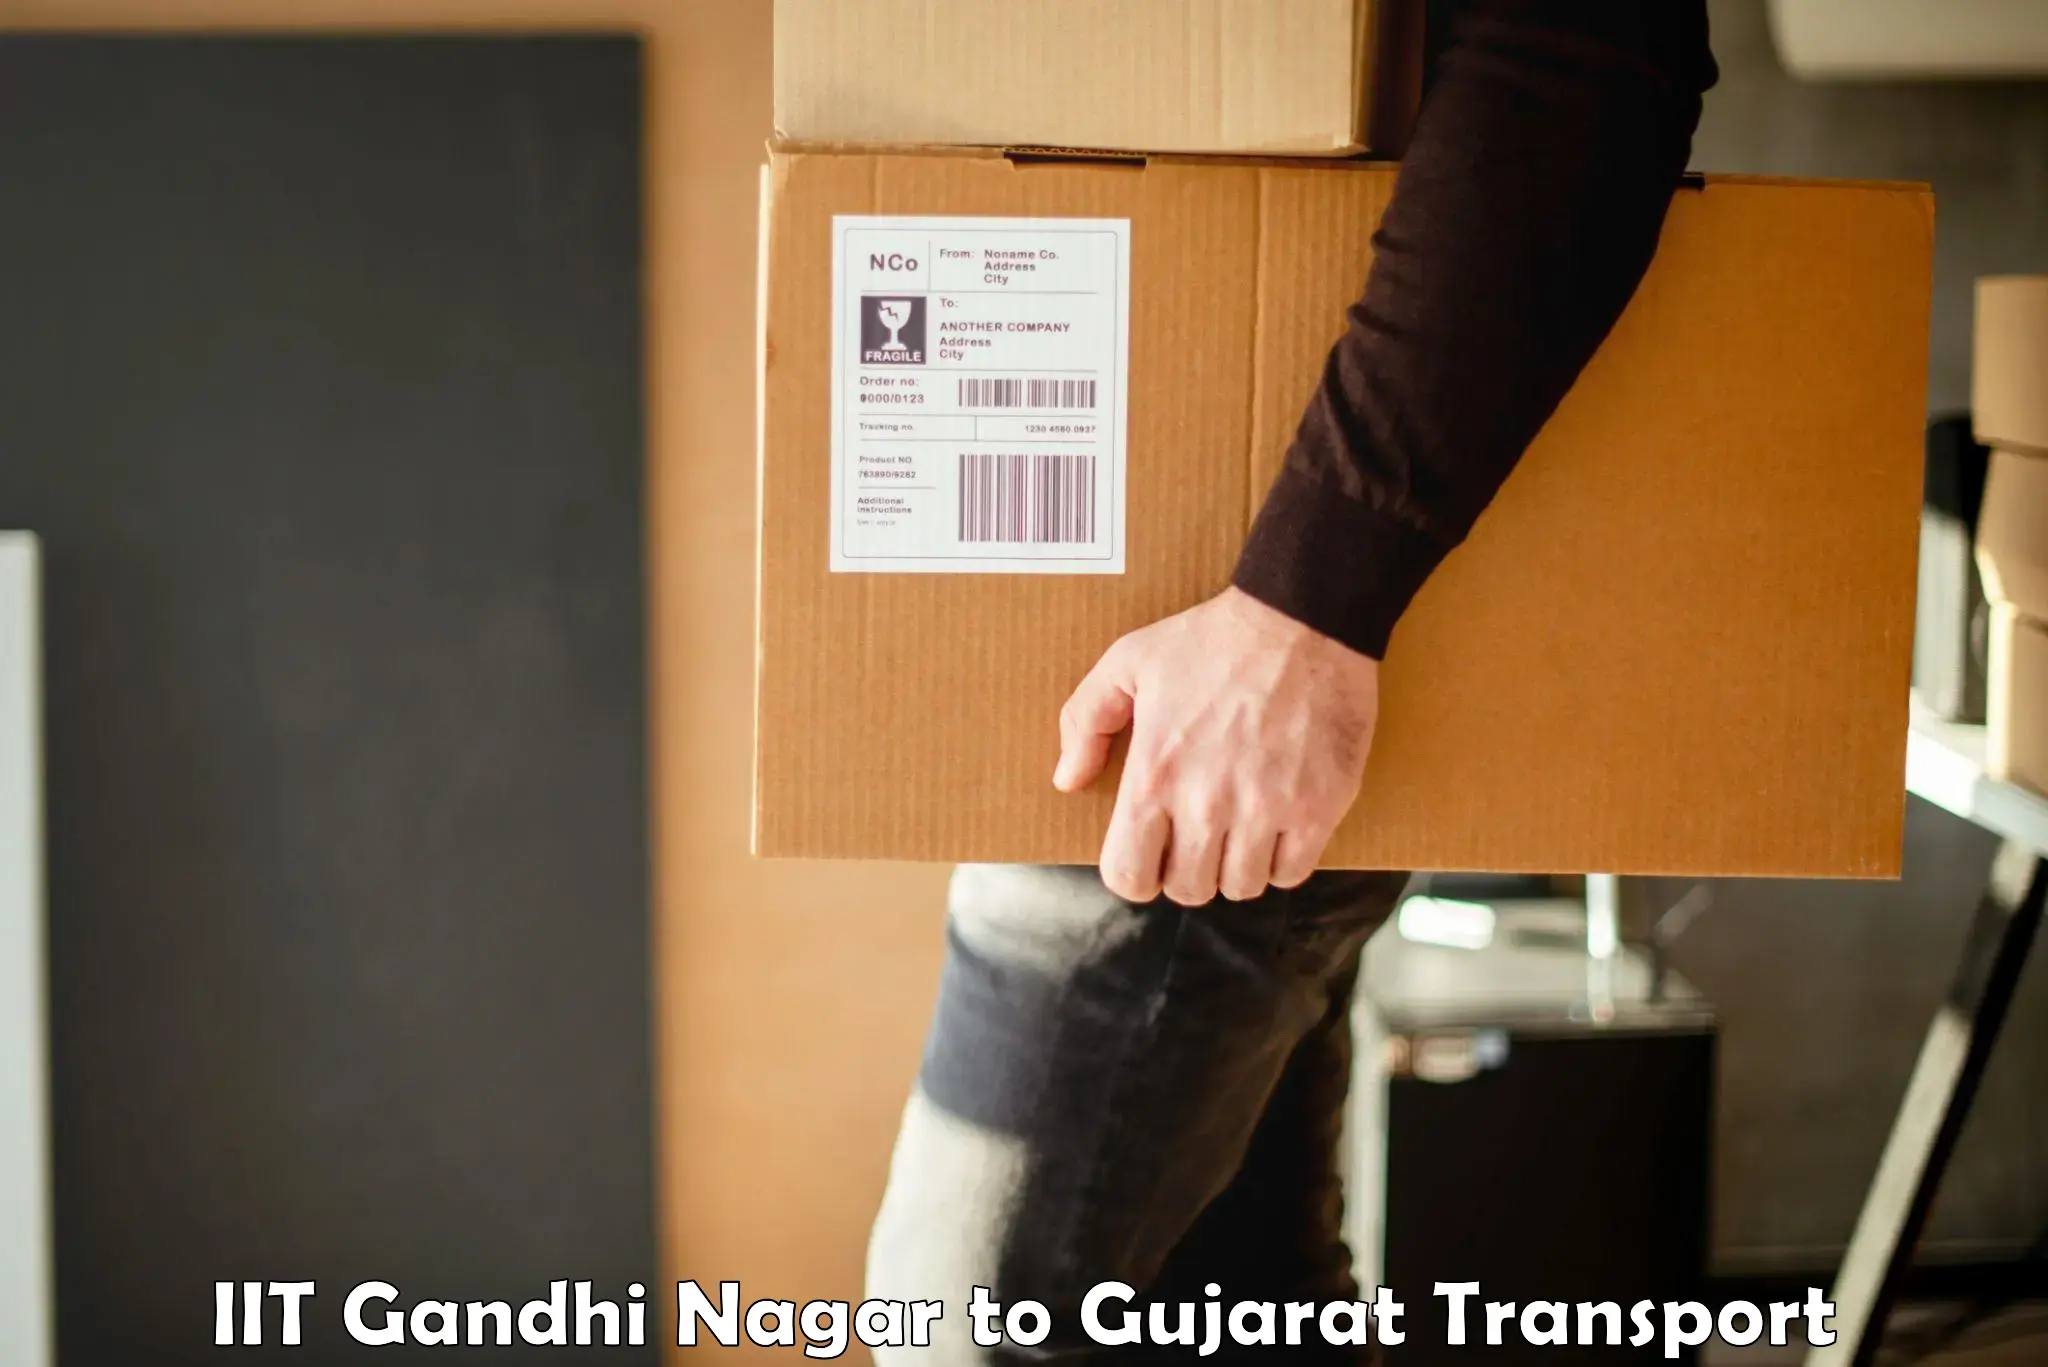 Furniture transport service IIT Gandhi Nagar to Dhanera